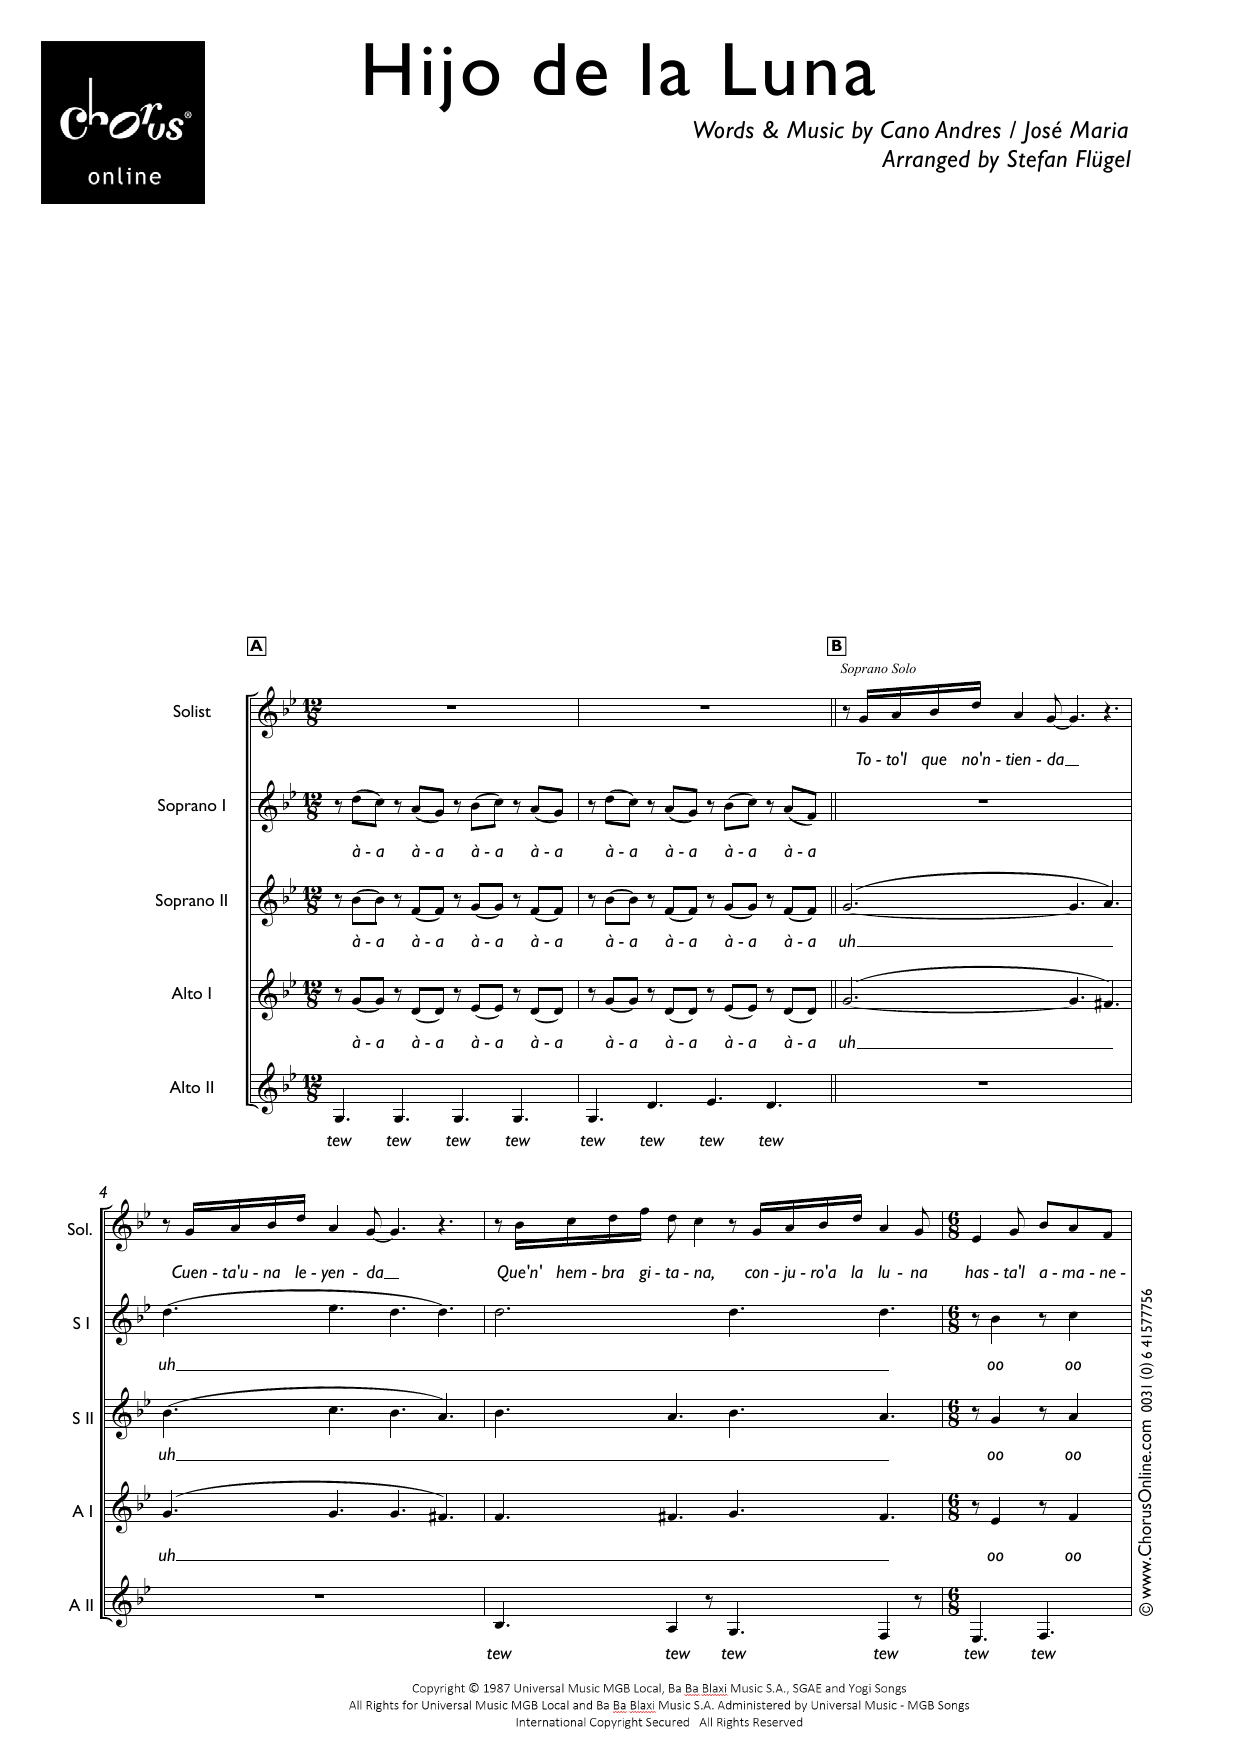 Mecano Hijo De La Luna (arr. Stefan Flügel) sheet music notes printable PDF score